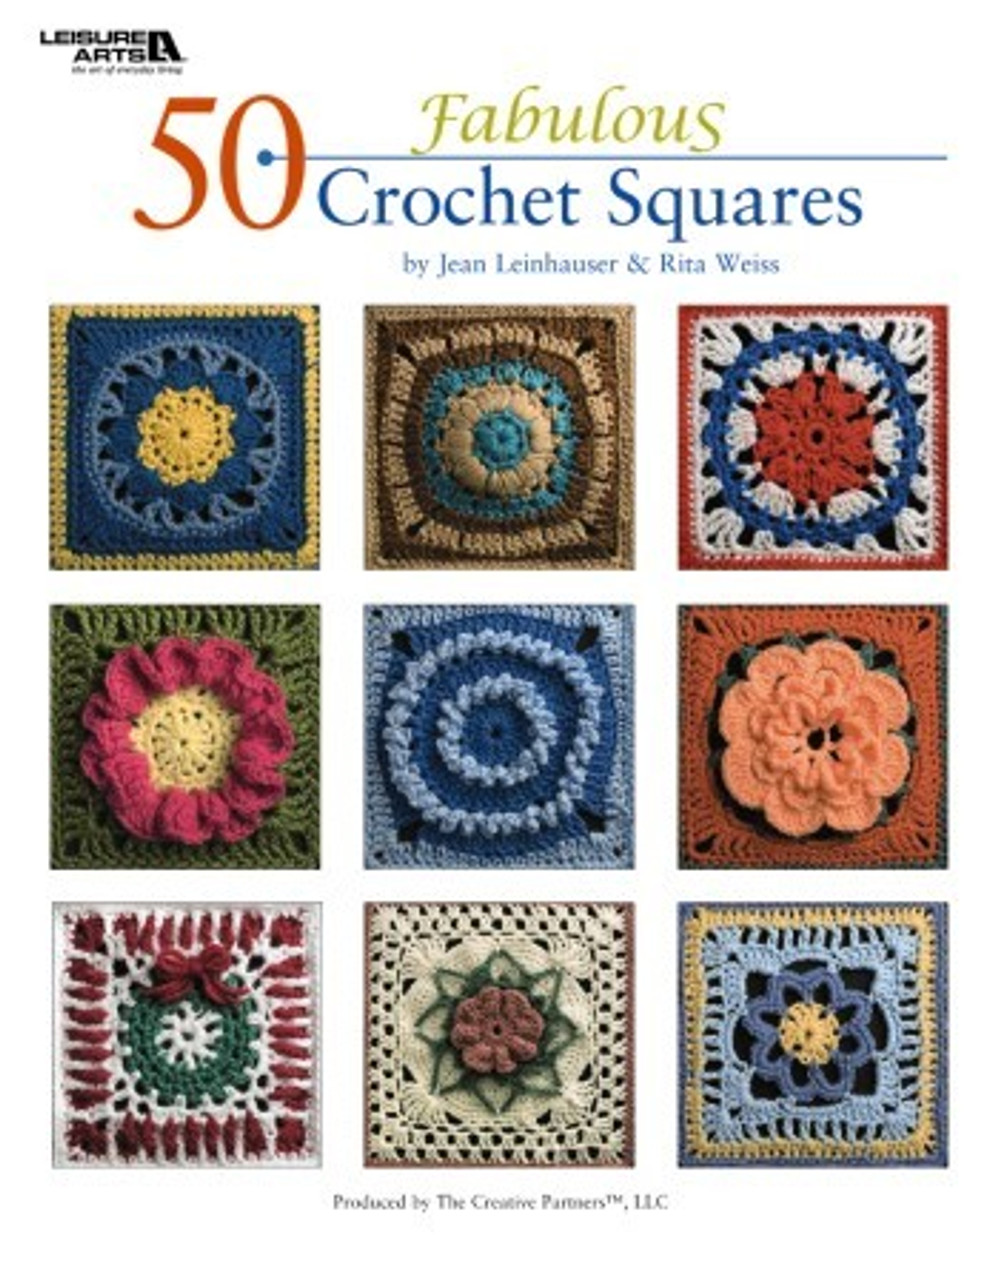 Leisure Arts -50 Fabulous Crochet Squares